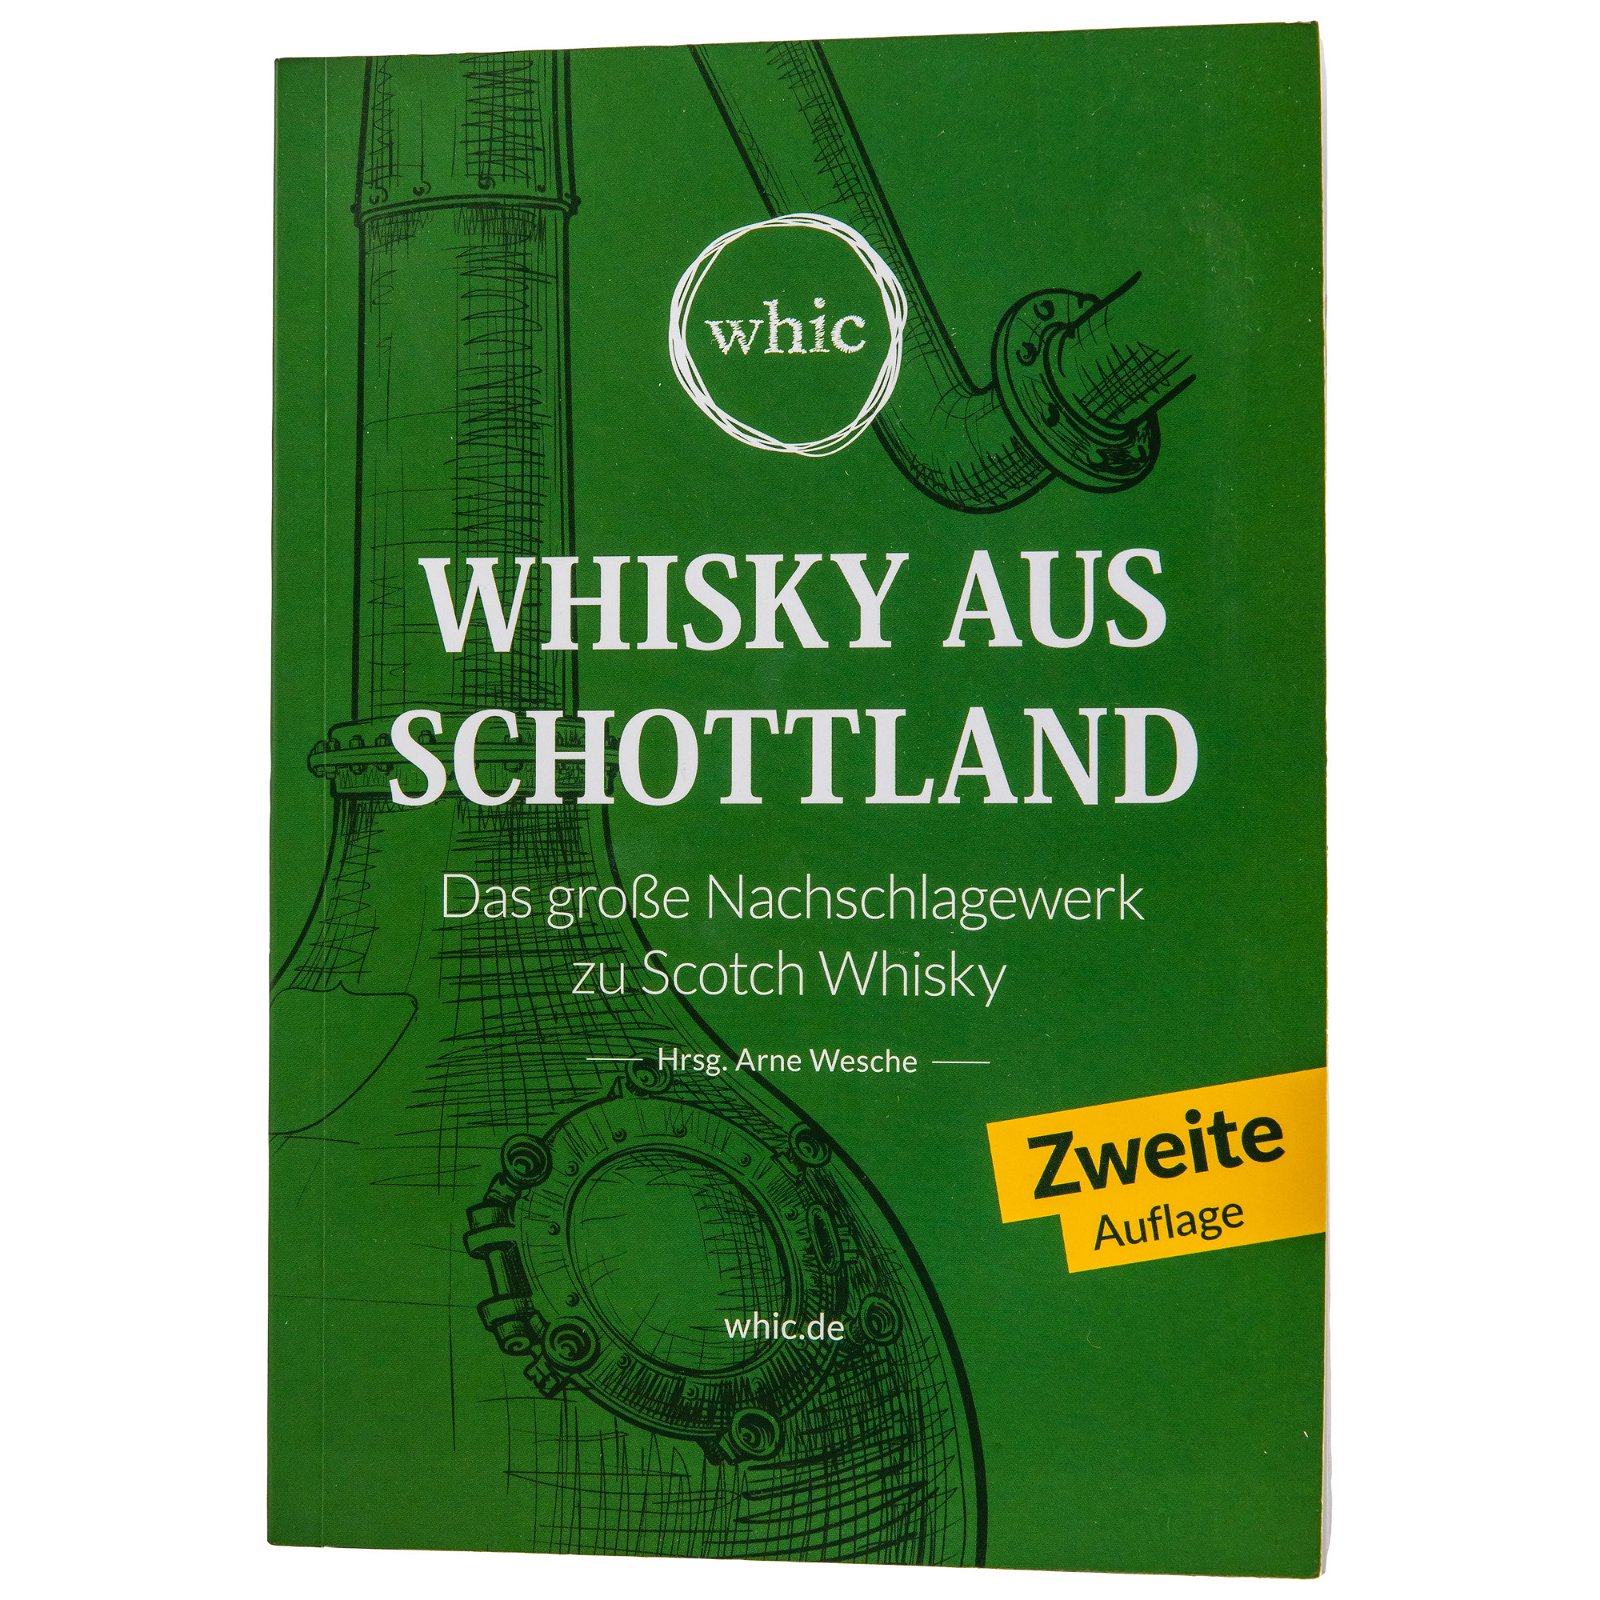 Whisky aus Schottland - Das große Scotch Whisky Buch (whic)